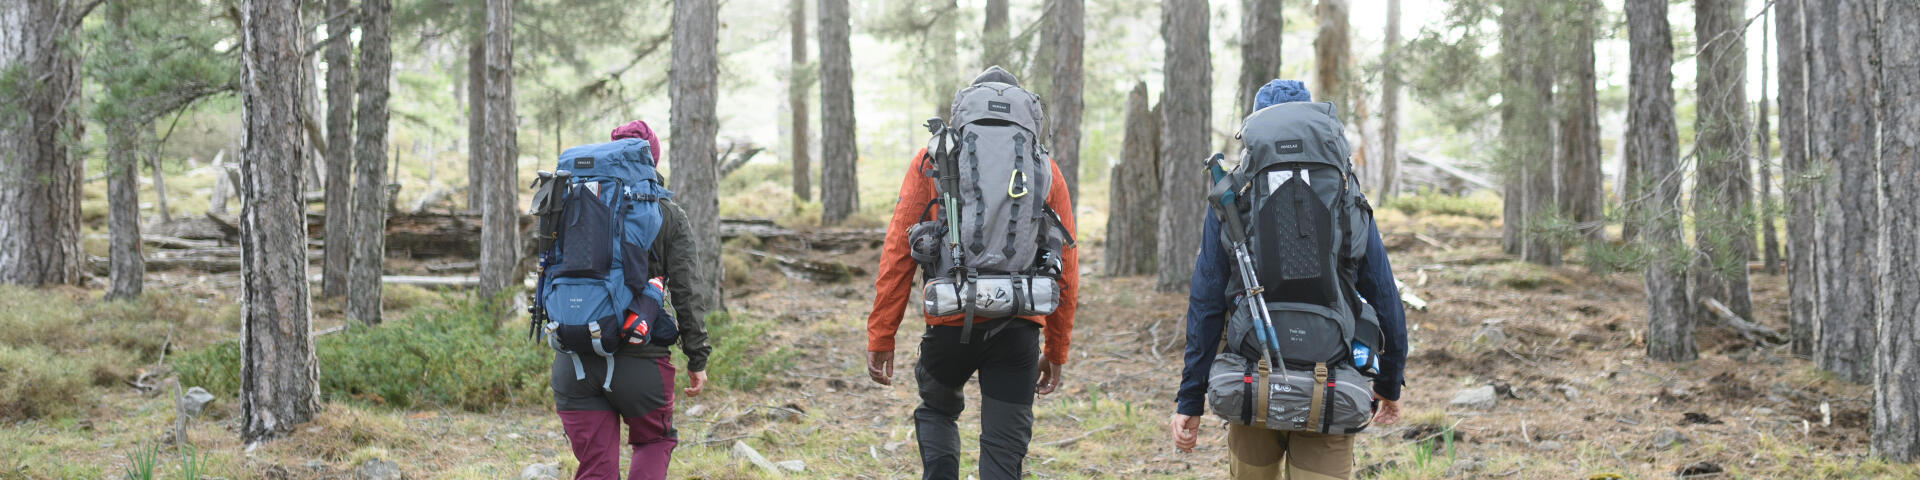 Photo de trois randonneurs en forêt